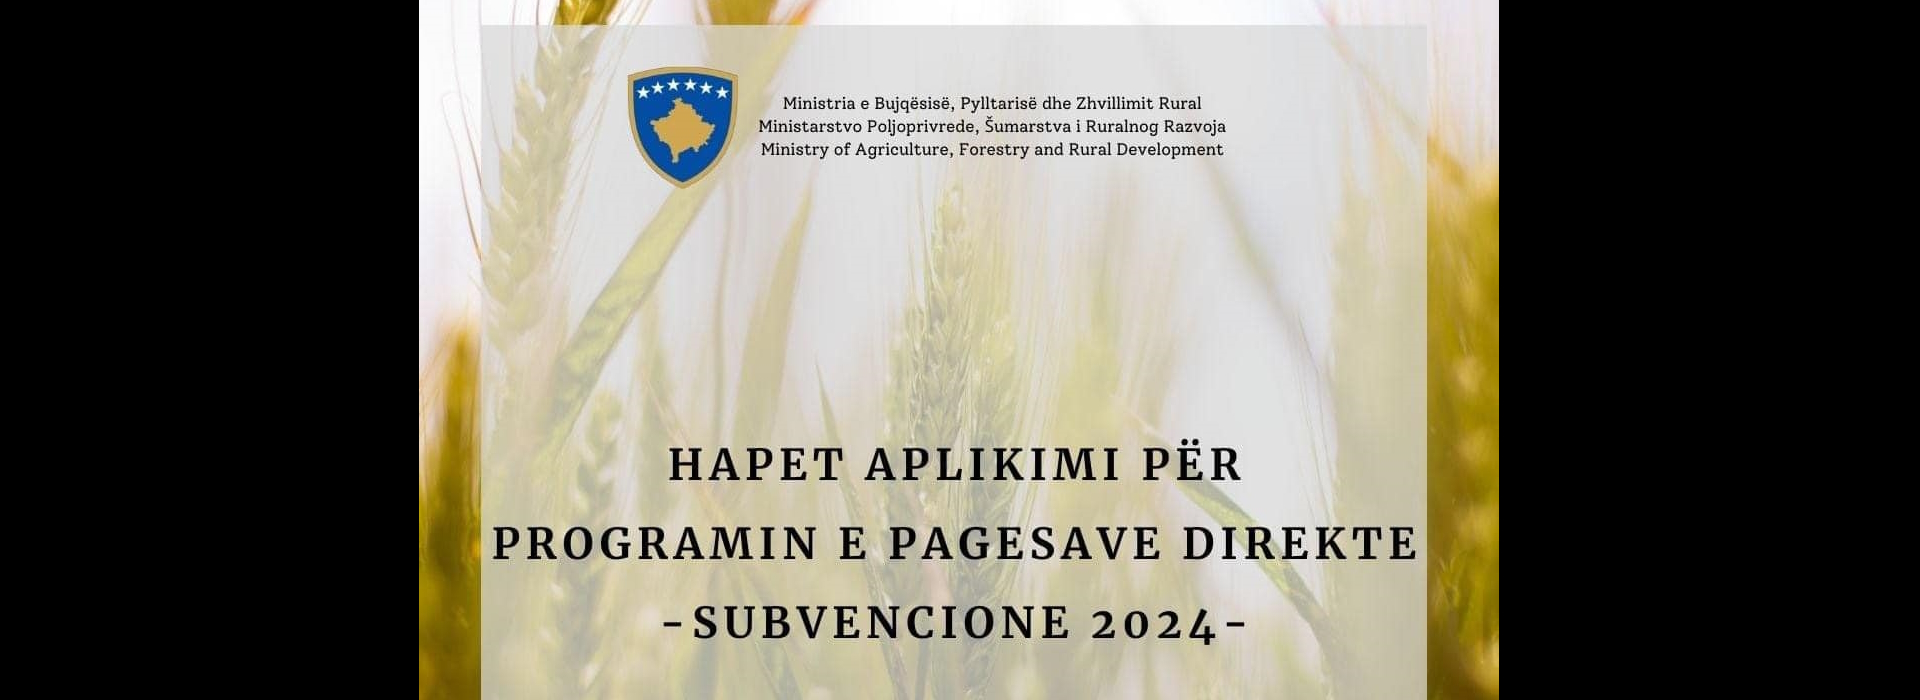 Hapet aplikimi për Programin e Pagesave Direkte/ Subvencione 2024 në bujqësi